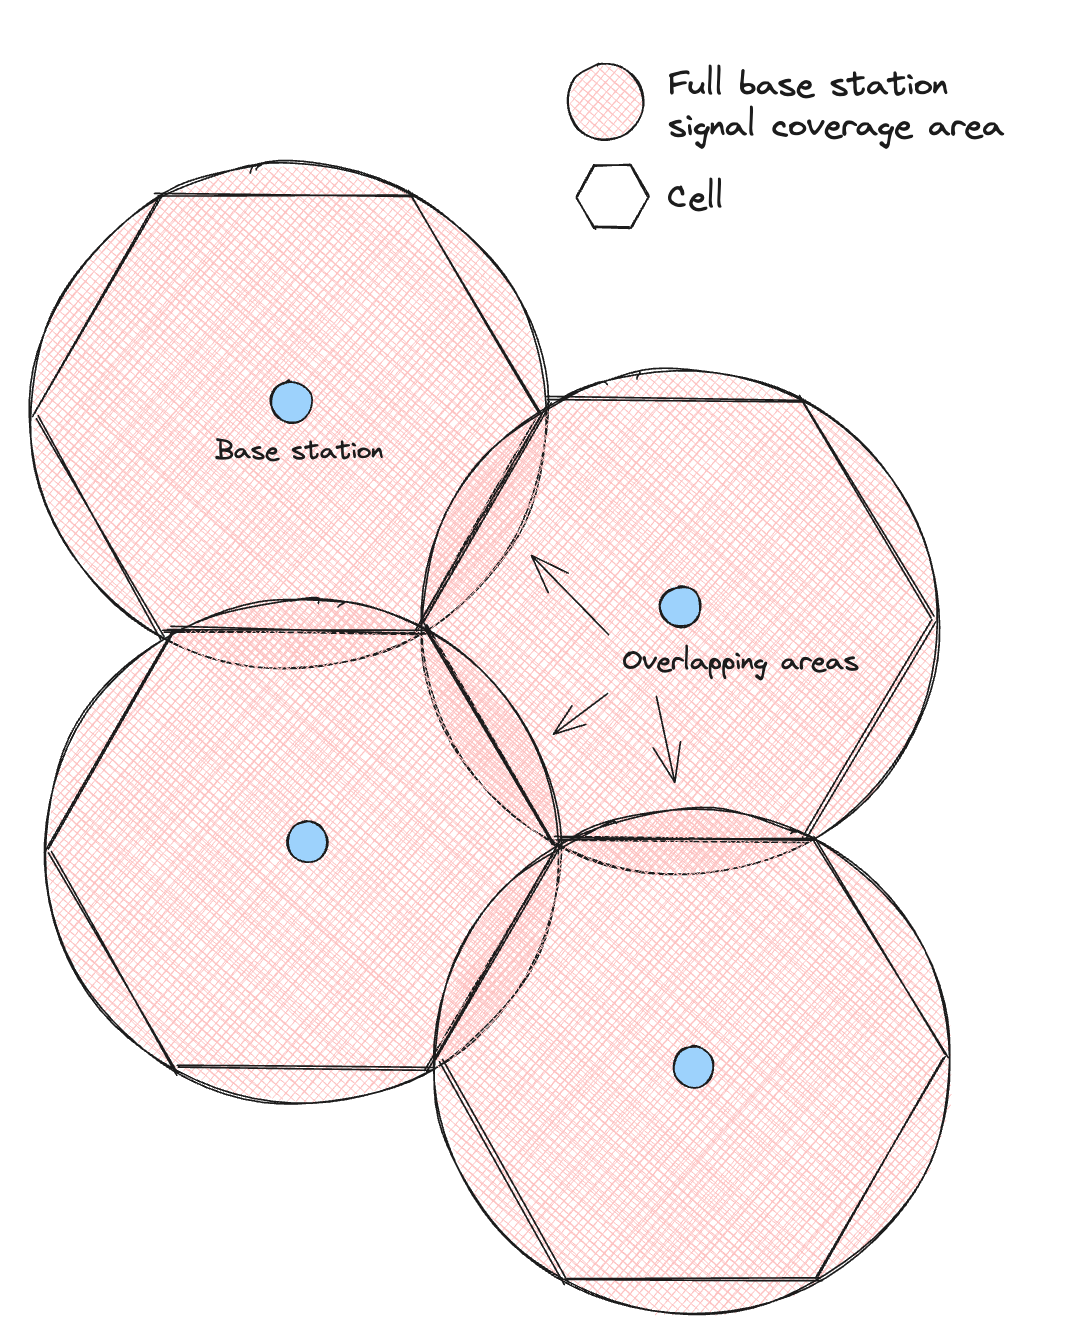 Cells arranged as hexagons